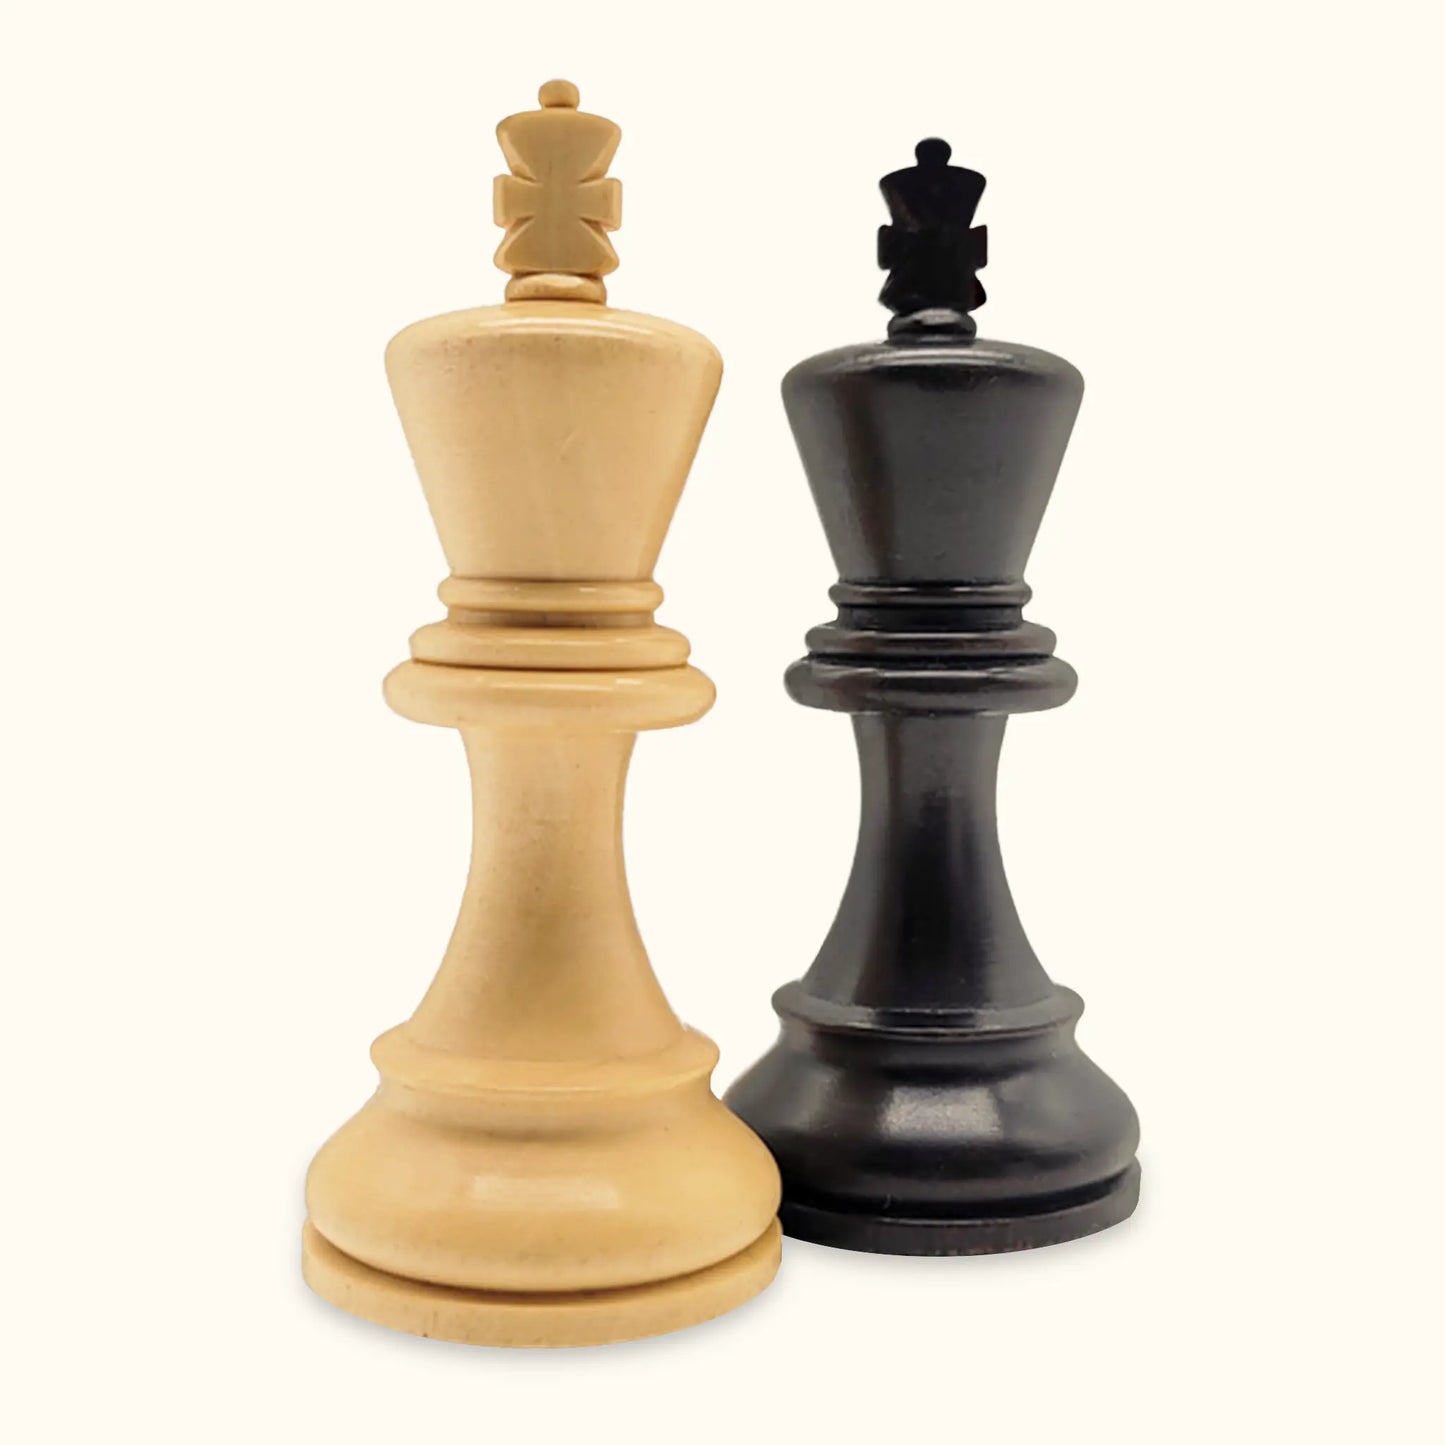 Chess pieces American Staunton ebonized king